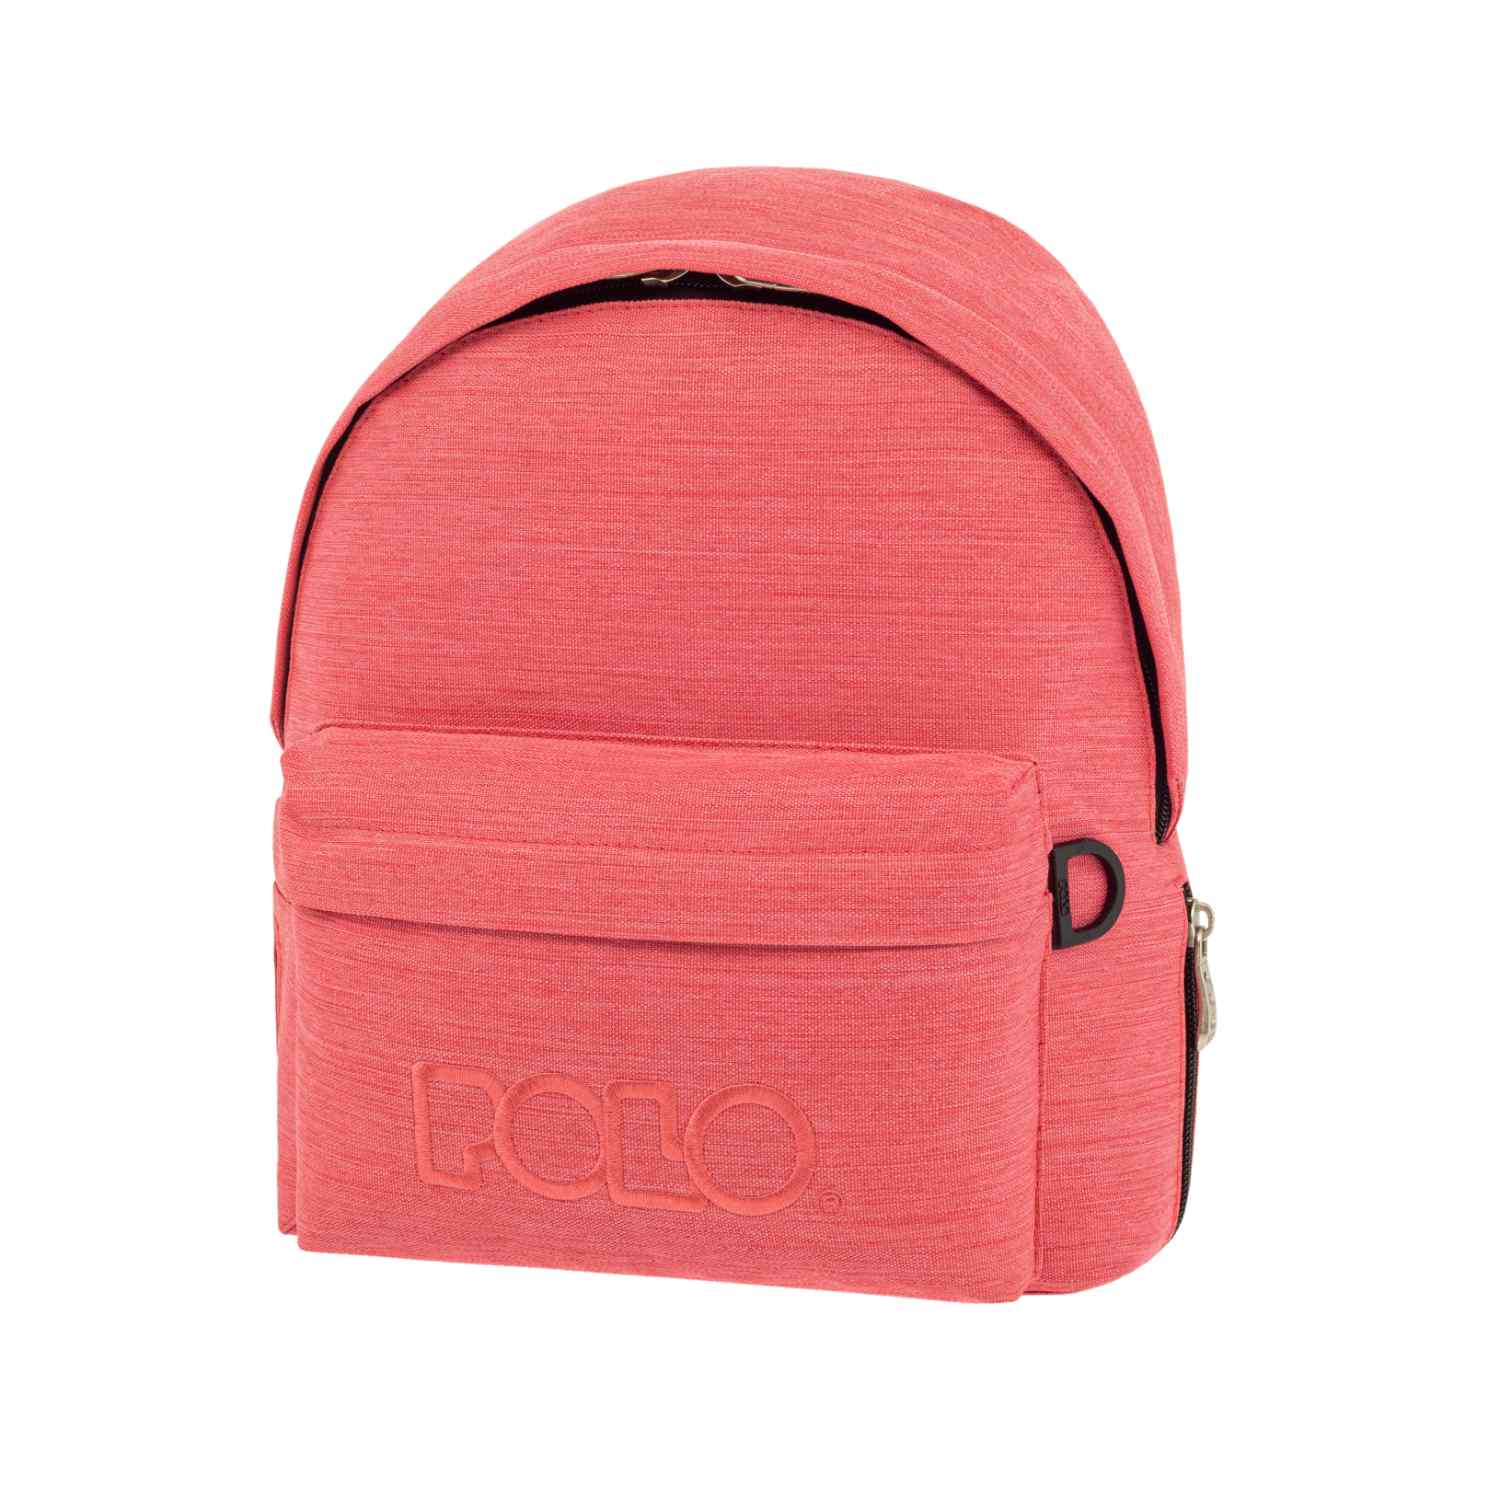 Τσάντα Βόλτας Mini Polo - Ροζ